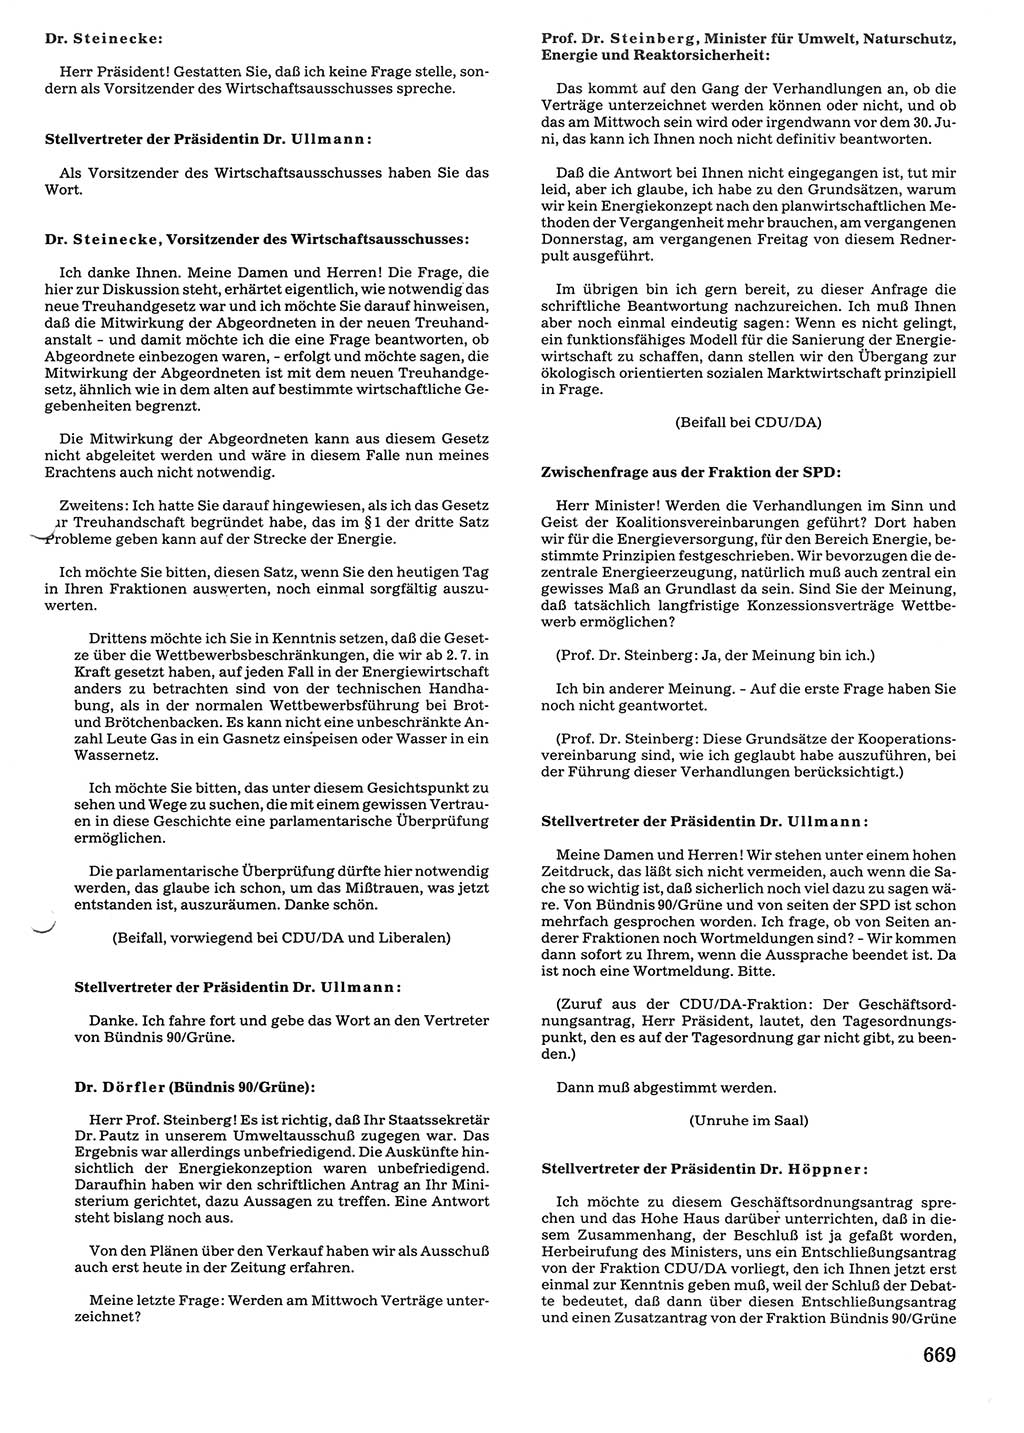 Tagungen der Volkskammer (VK) der Deutschen Demokratischen Republik (DDR), 10. Wahlperiode 1990, Seite 669 (VK. DDR 10. WP. 1990, Prot. Tg. 1-38, 5.4.-2.10.1990, S. 669)